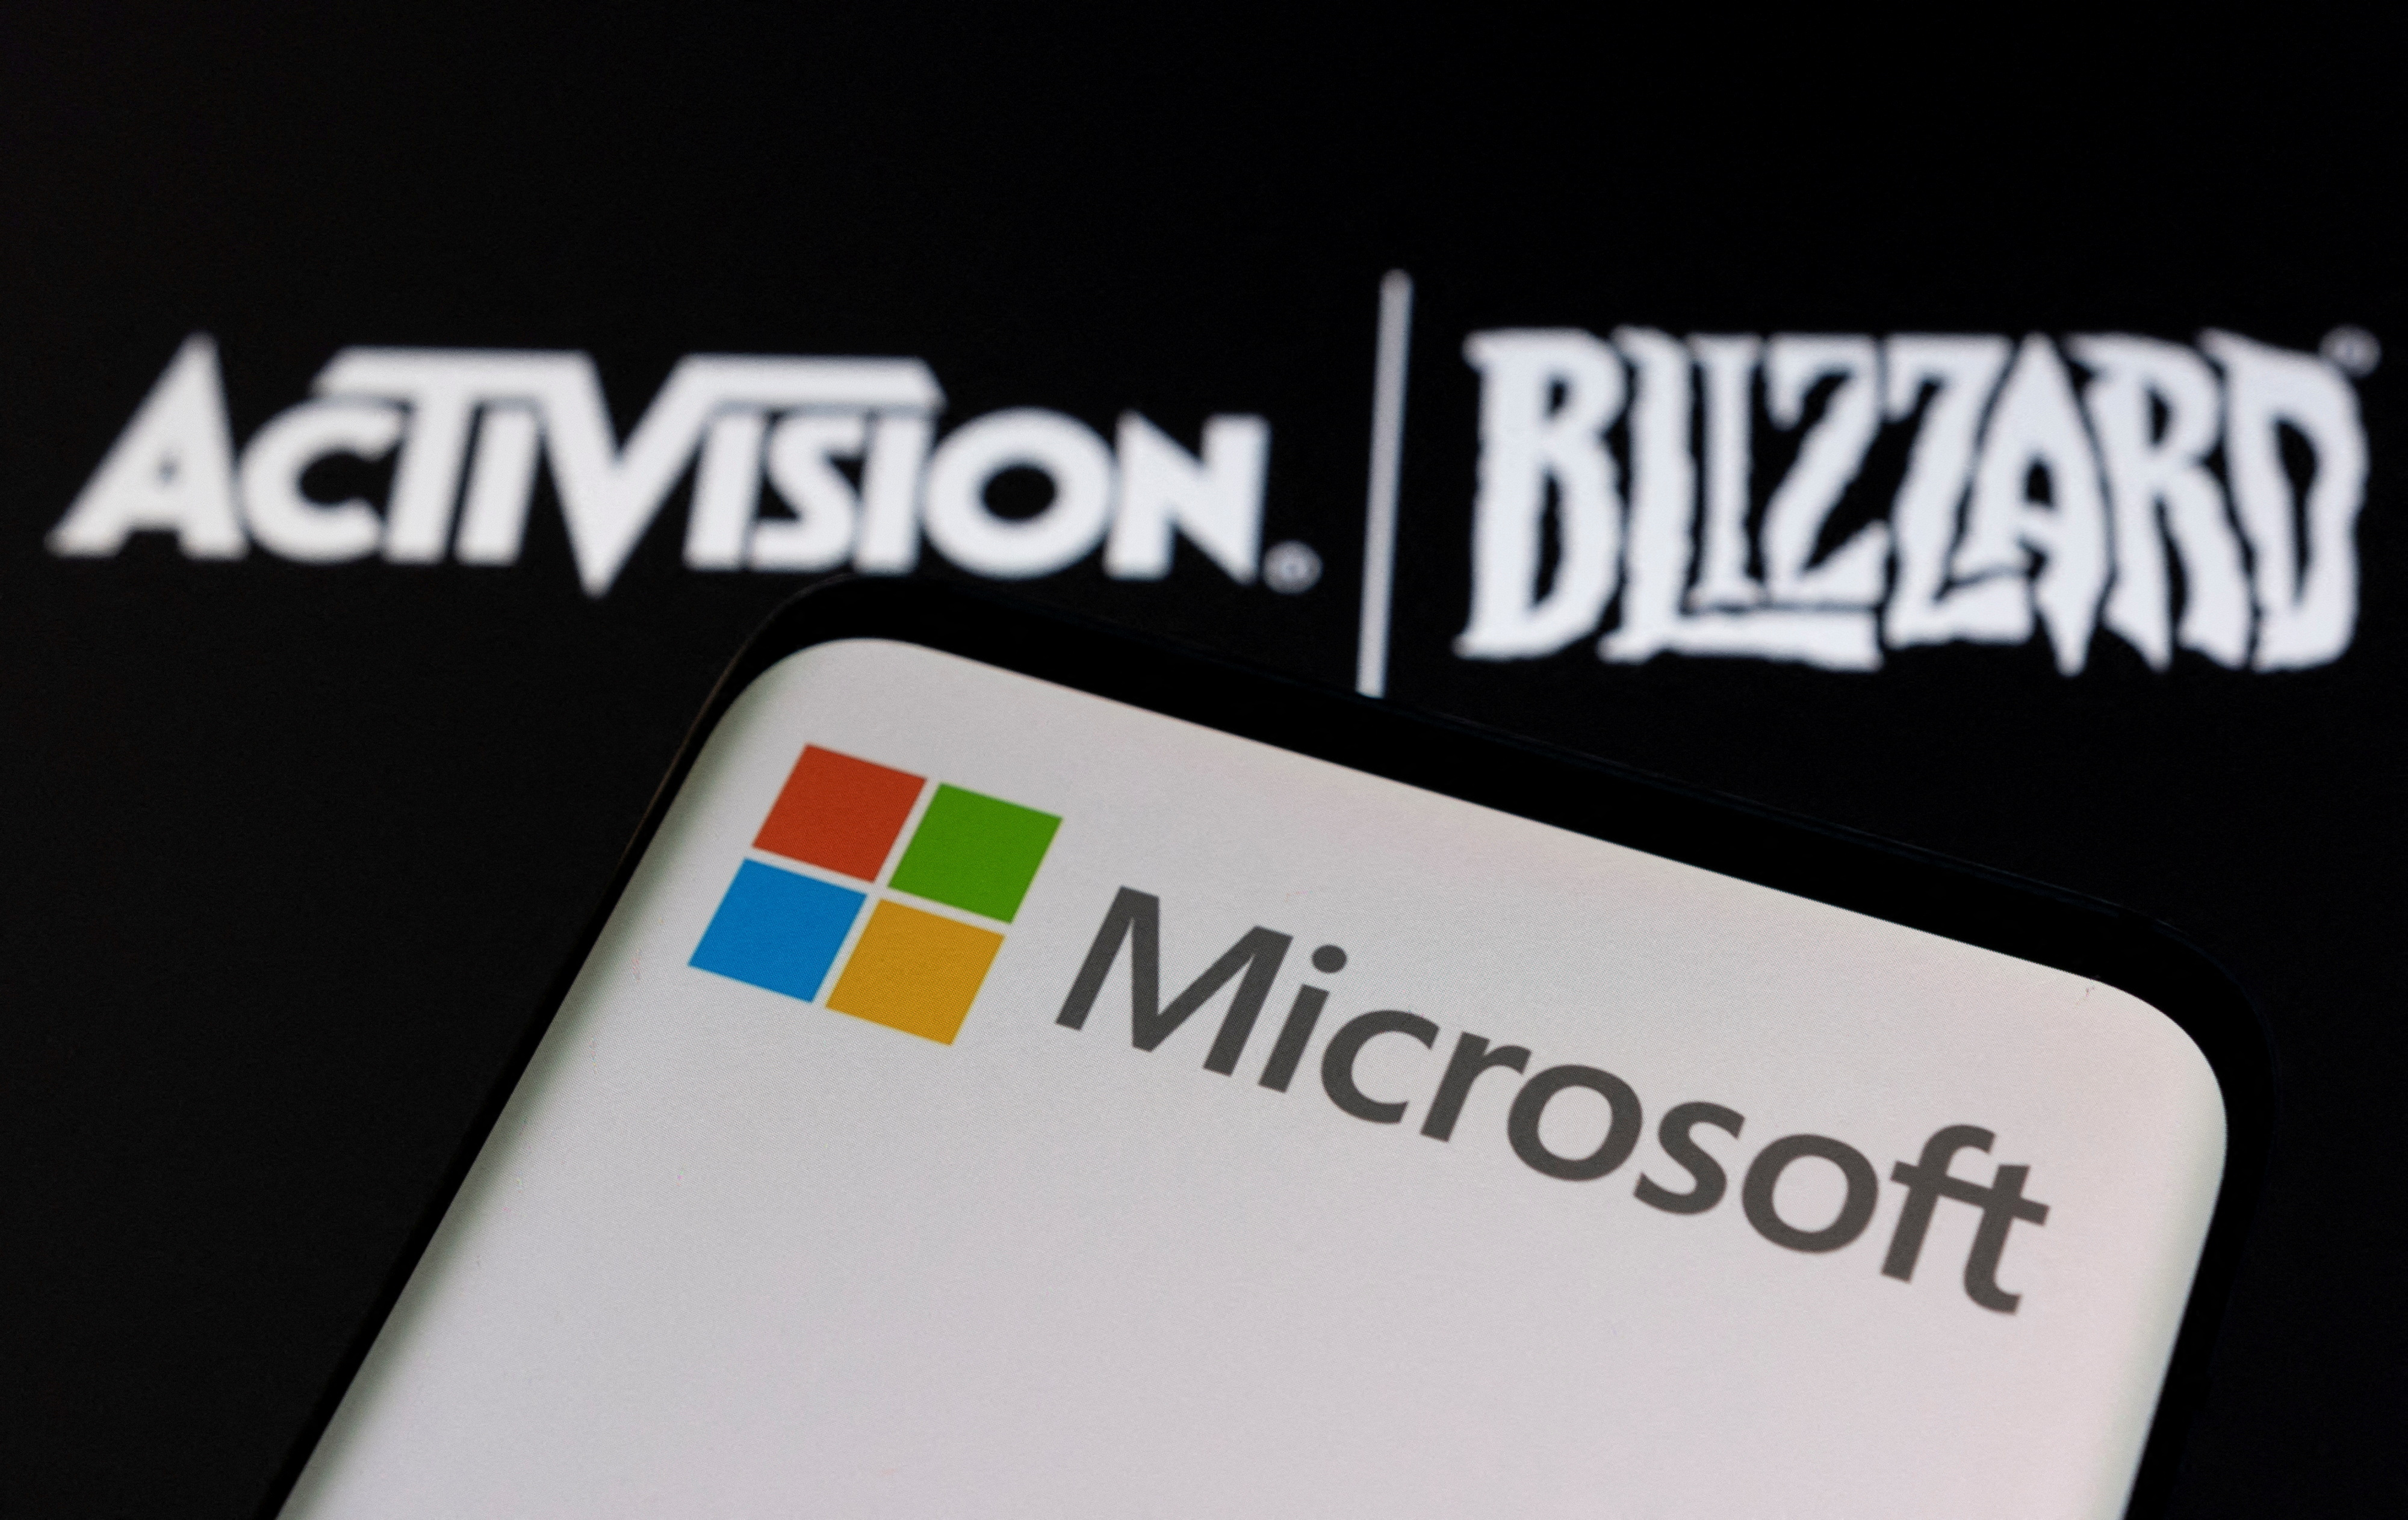 Szefowie Microsoftu i Xbox będą osobiście bronić firmy przed sądem, aby zablokować przejęcie Blizzarda przez Activision